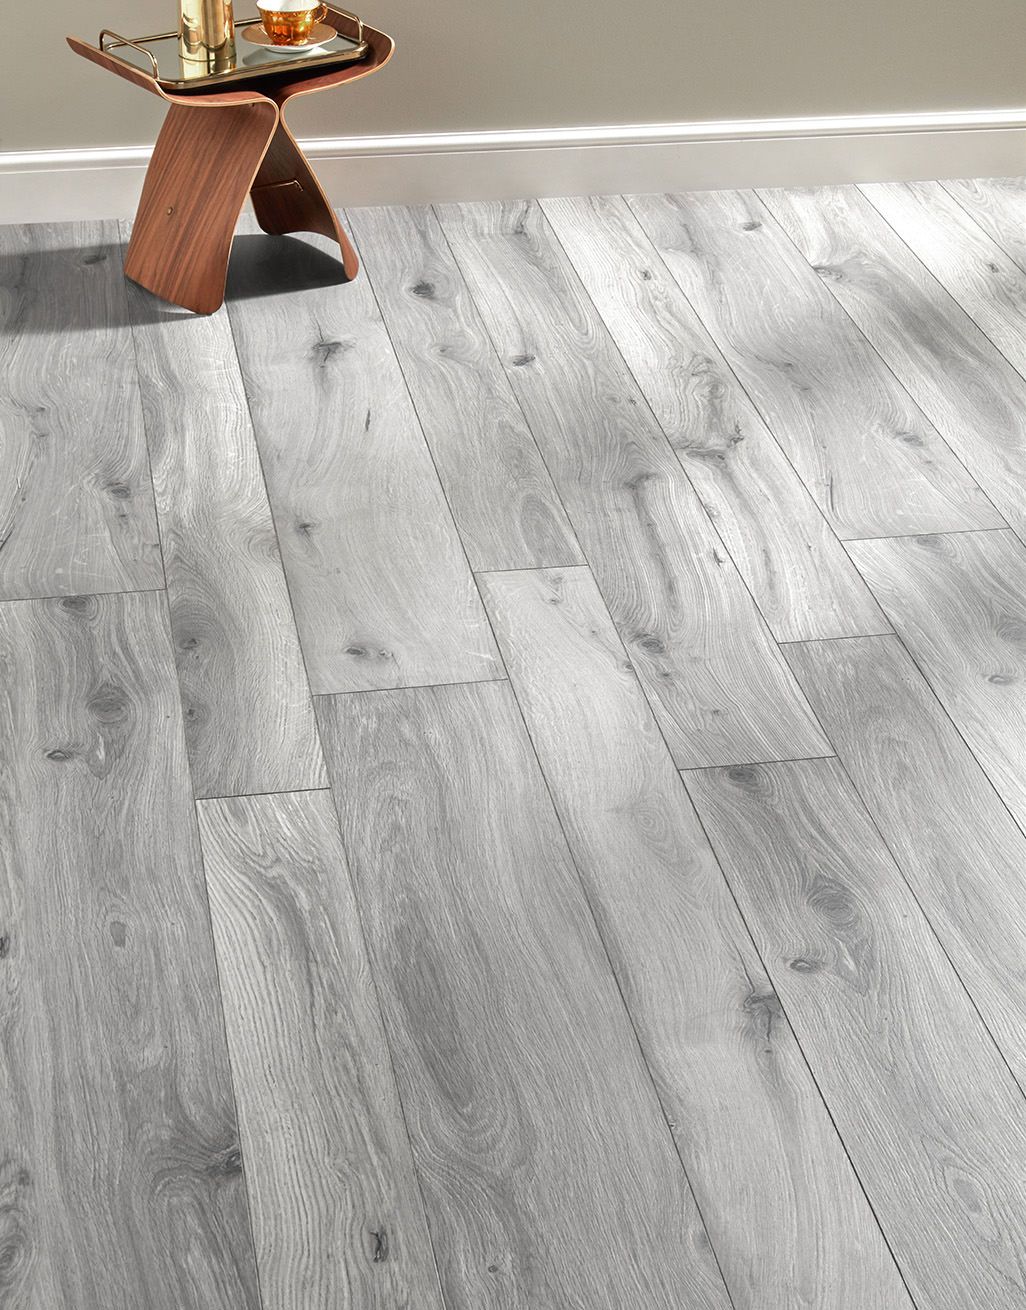 Coastal Grey Oak Laminate Flooring, Reclaimed Barnwood Laminate Flooring